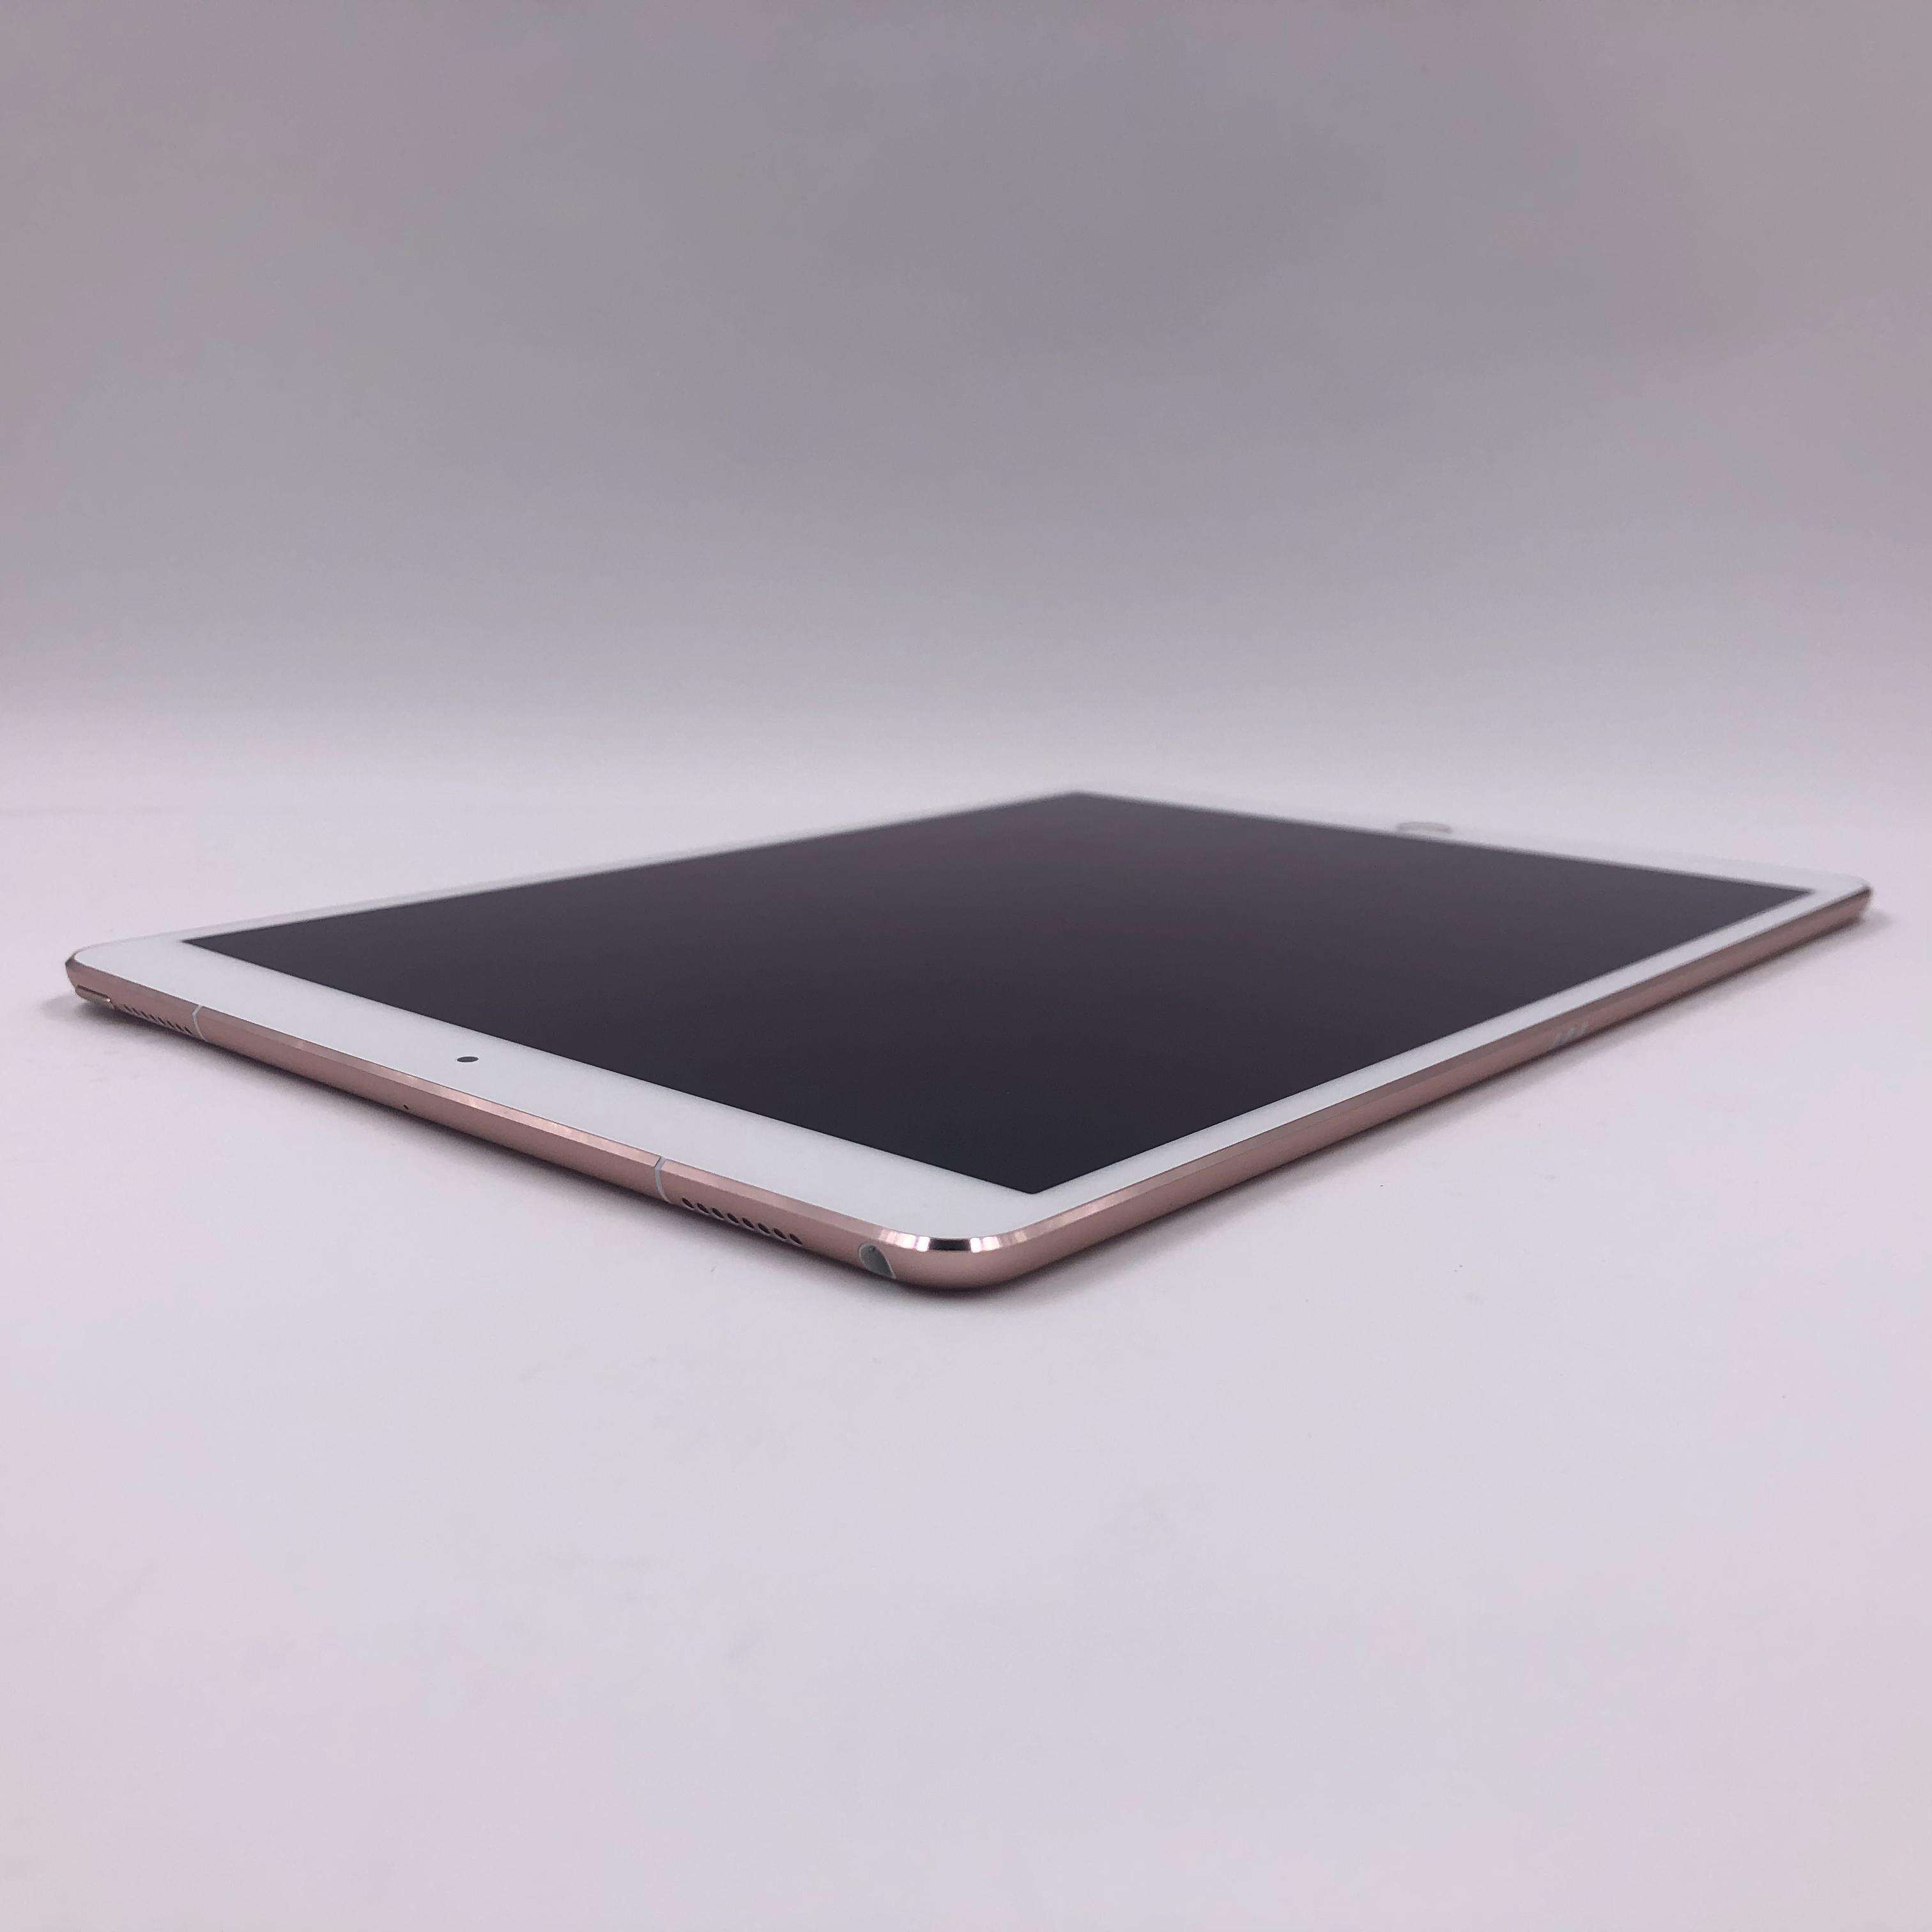 iPad Pro 10.5英寸(2017) 512G 国行Cellular版